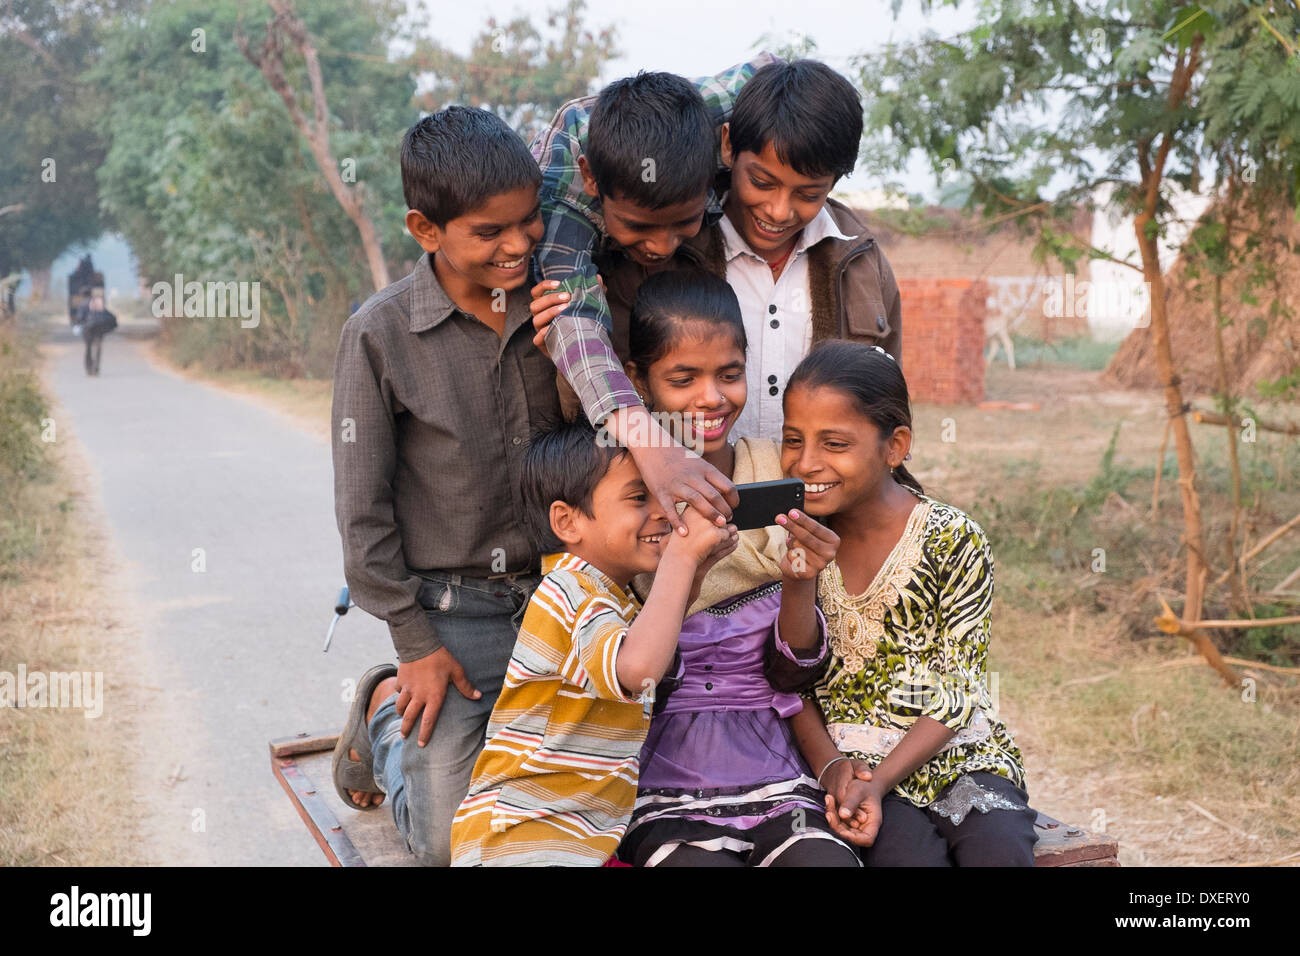 Indien, Uttar Pradesh, Agra, sechs Kinder reiten auf der Rückseite der Blick auf ein smart Phone Fahrradanhänger Stockfoto